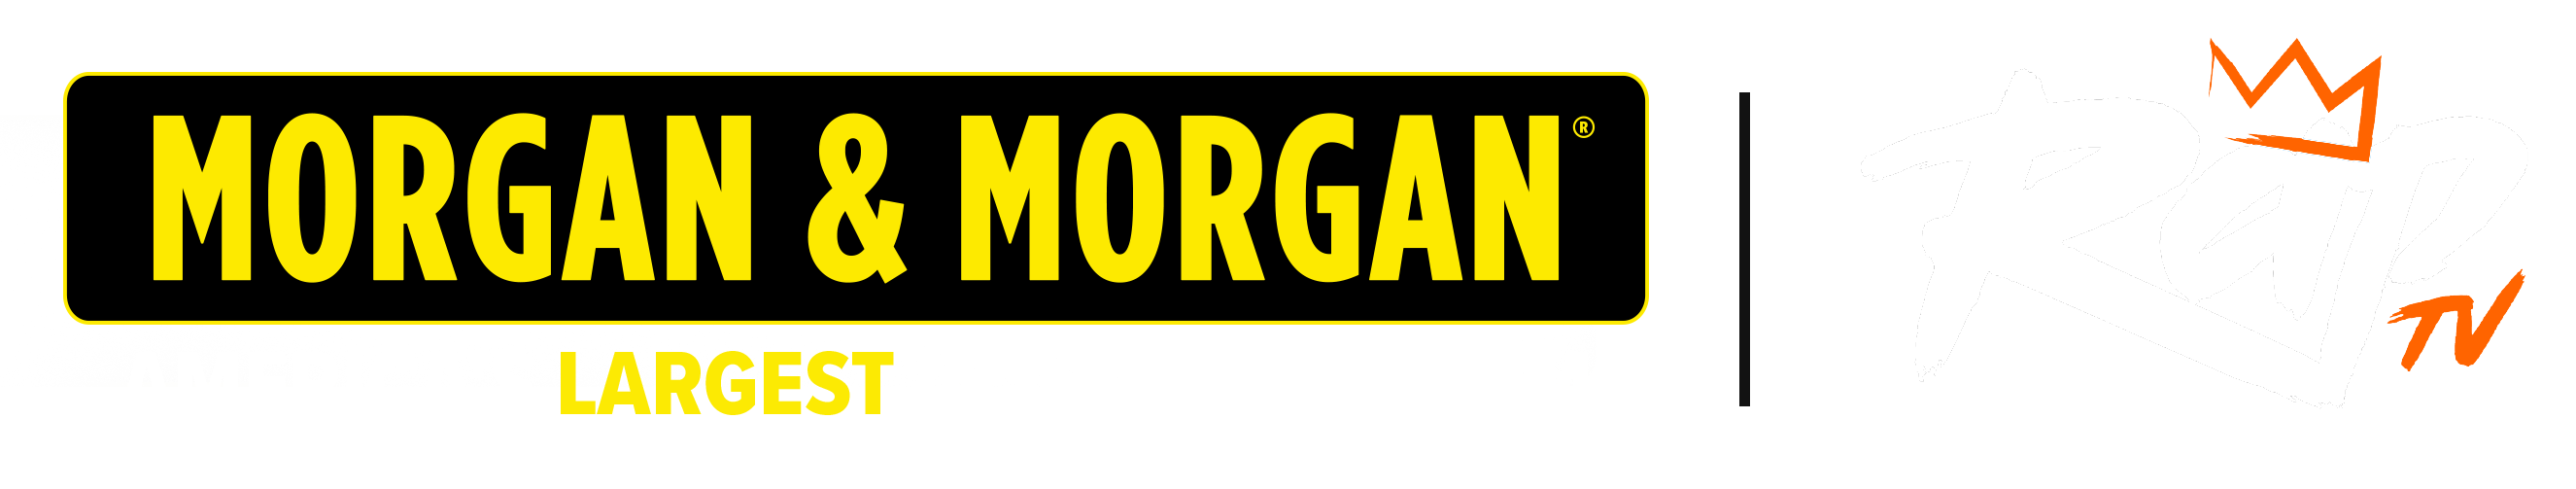 Morgan & Morgan & RapTV Logos